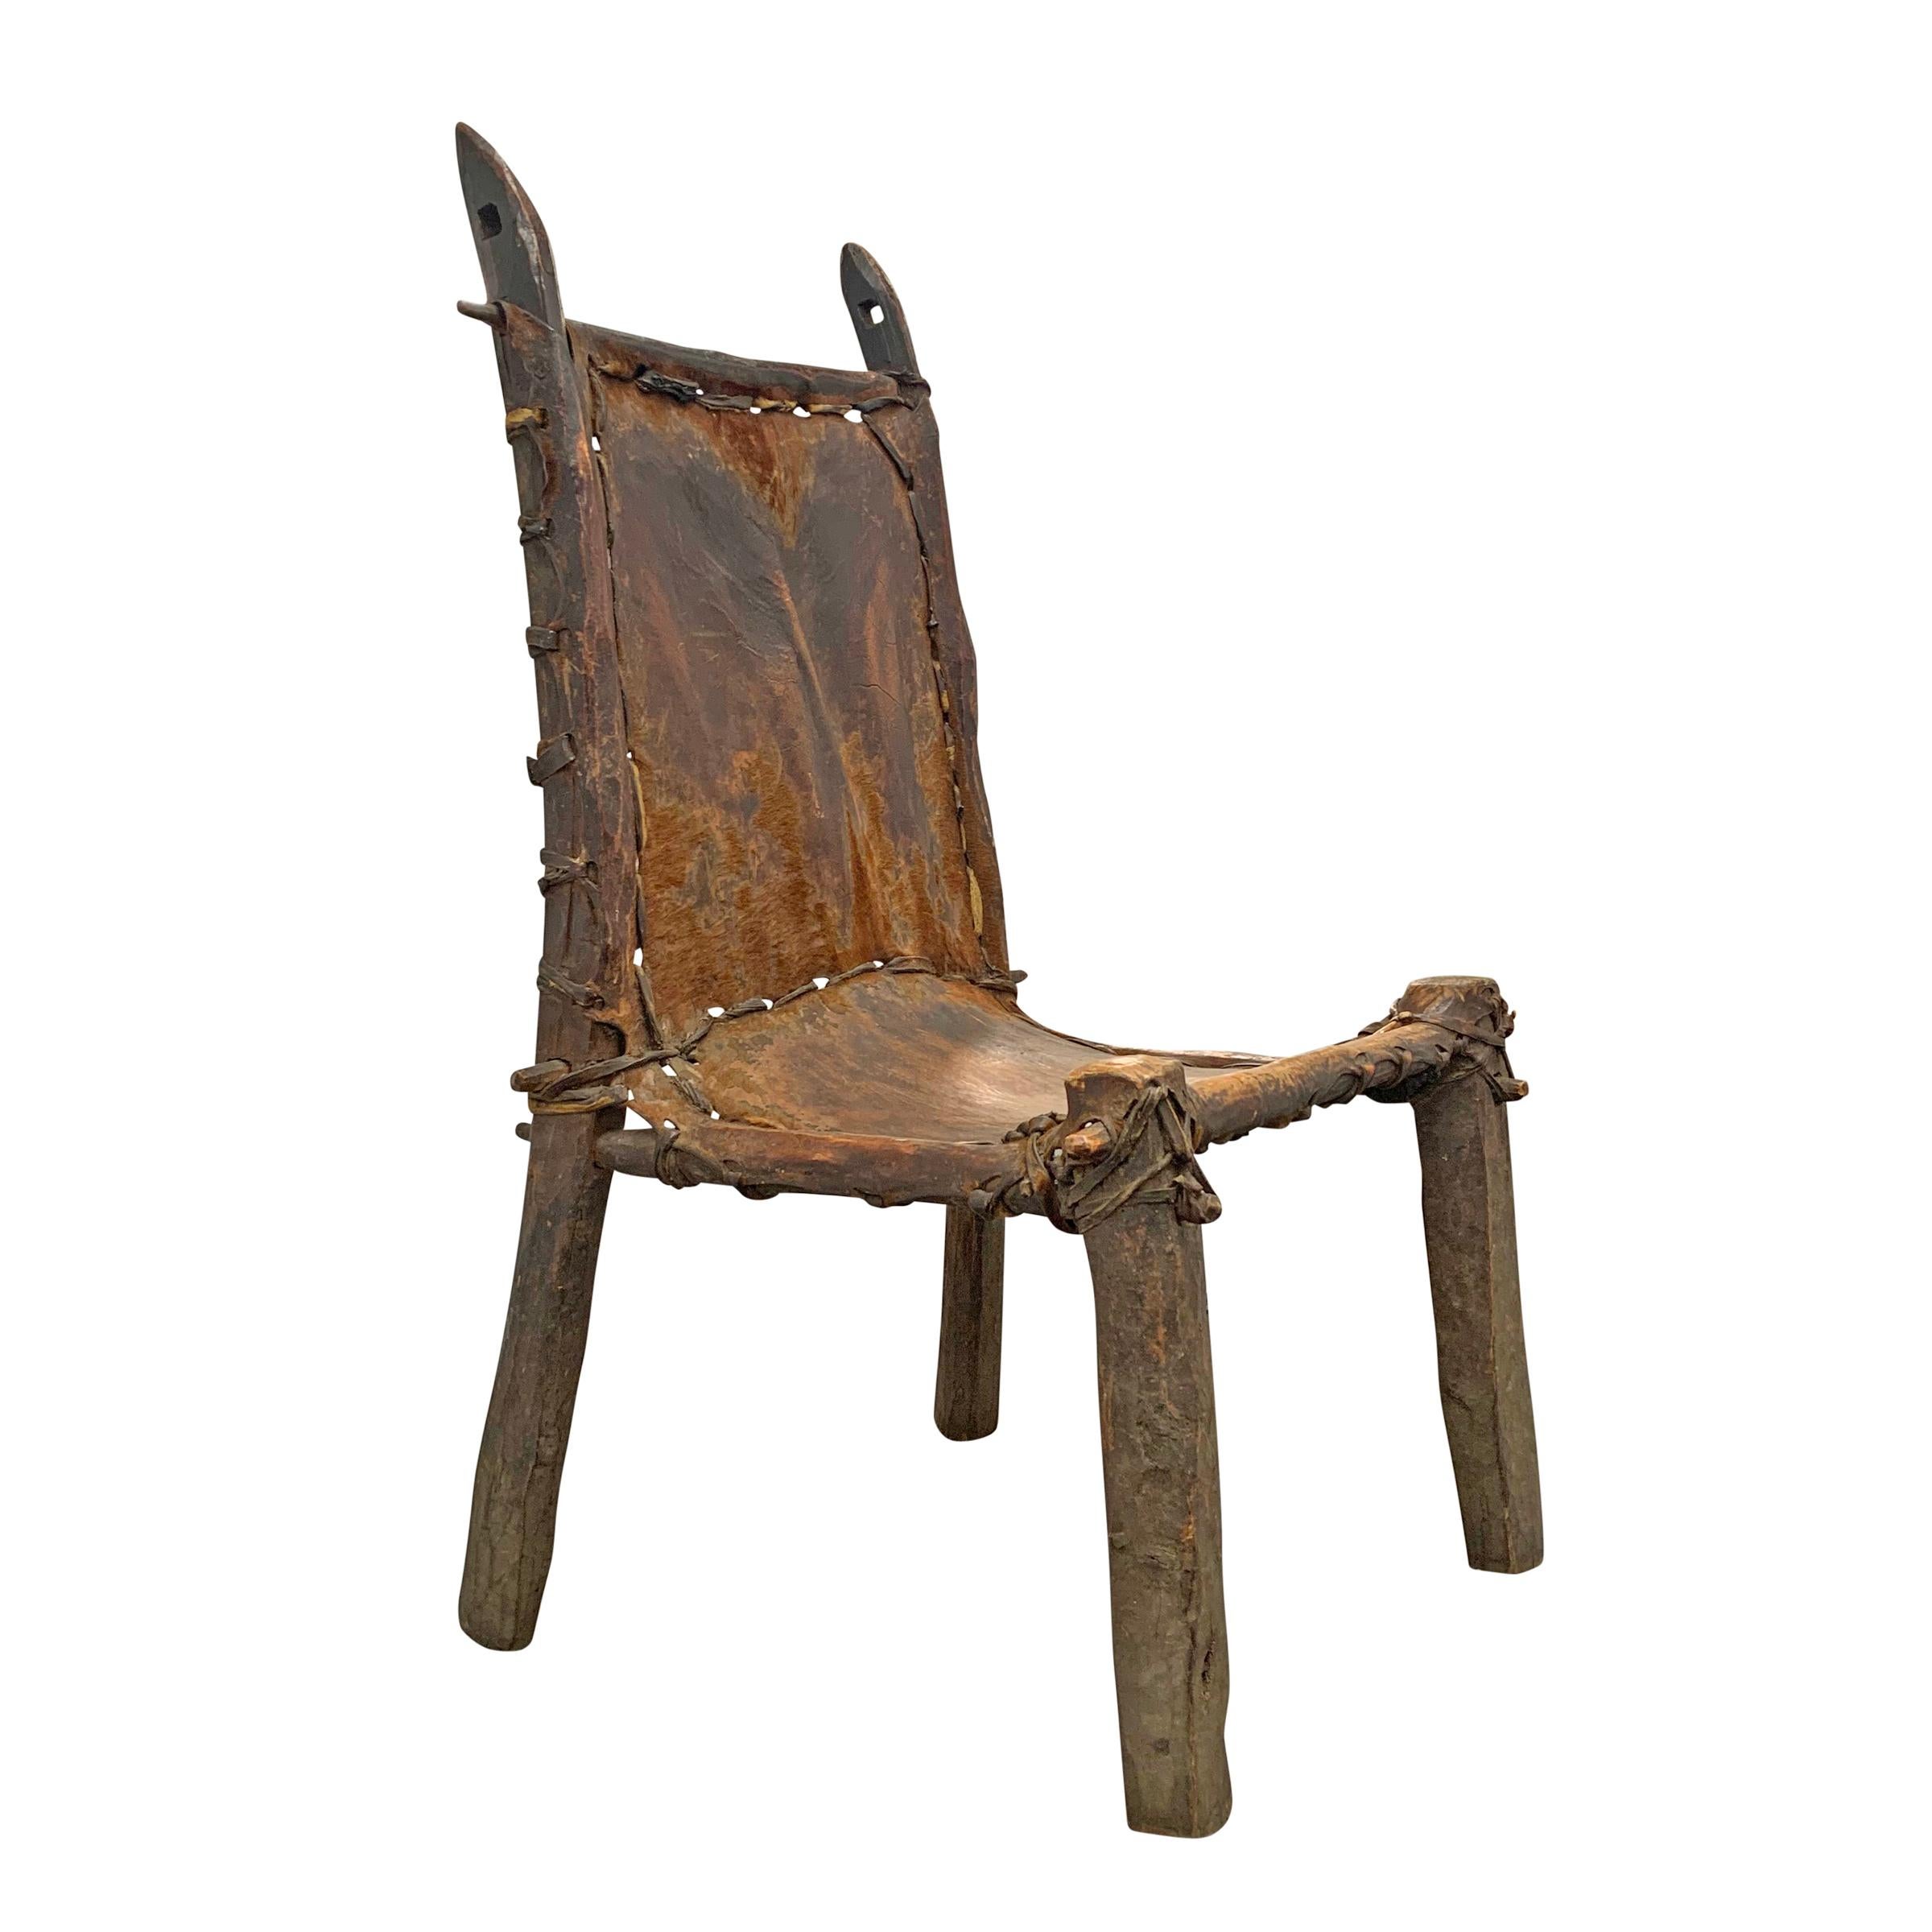 Une chaise d'appoint éthiopienne du début du 20e siècle, merveilleusement sculpturale, avec une assise et un dossier en cuir cousus avec des bandes de cuir, et tendus sur un cadre en bois primitif. La chaise est fonctionnelle, mais c'est plus un